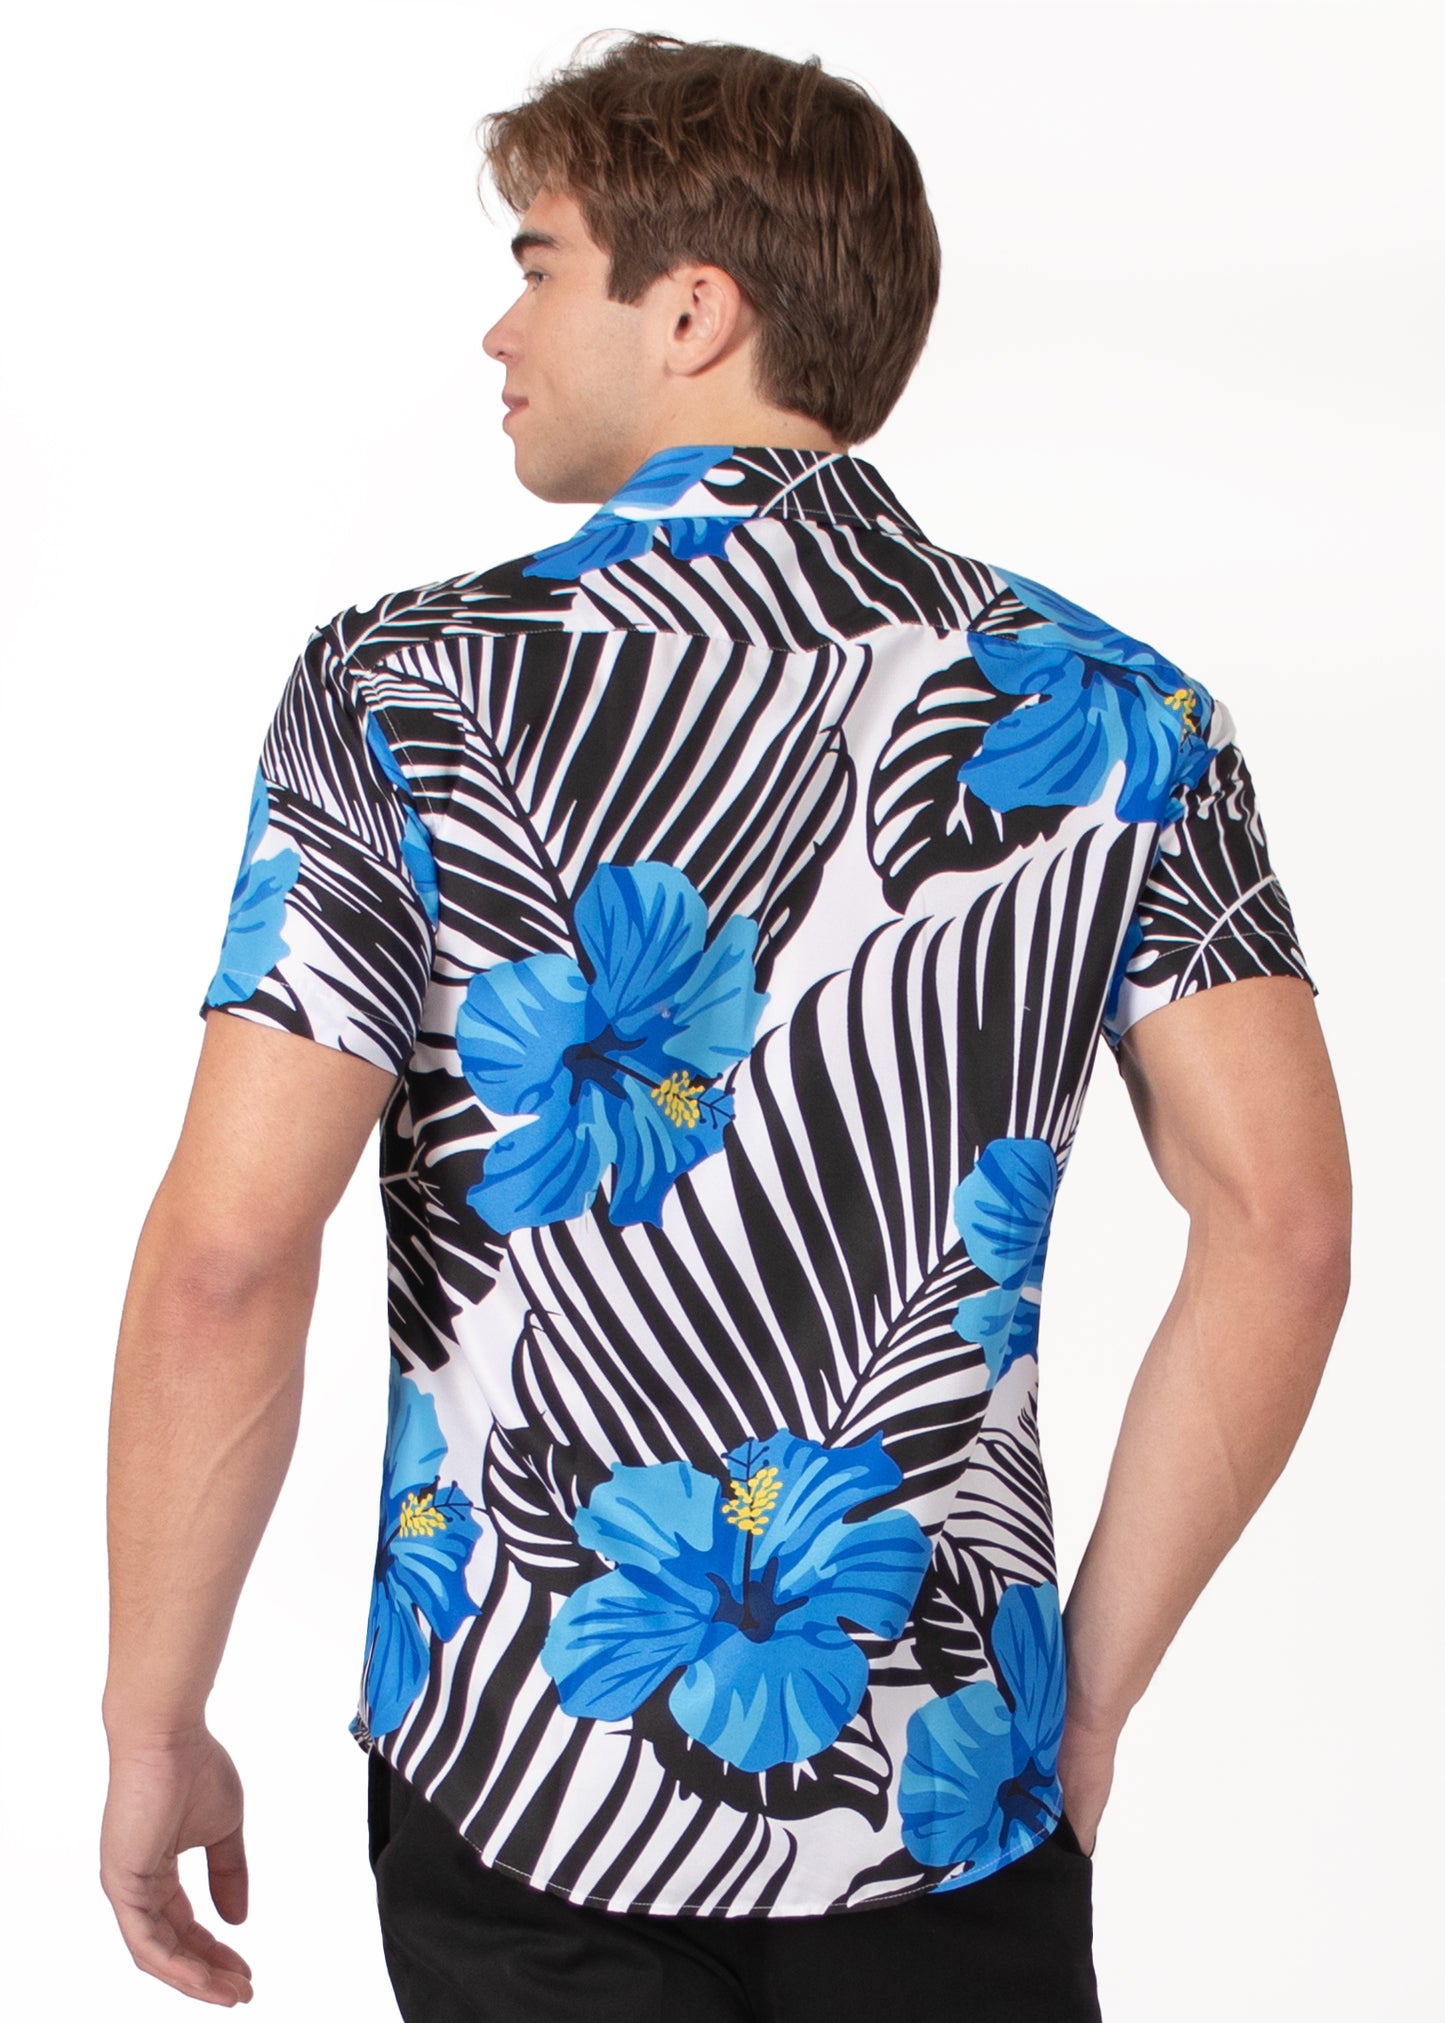 'Flower Power' Short Sleeve Shirt